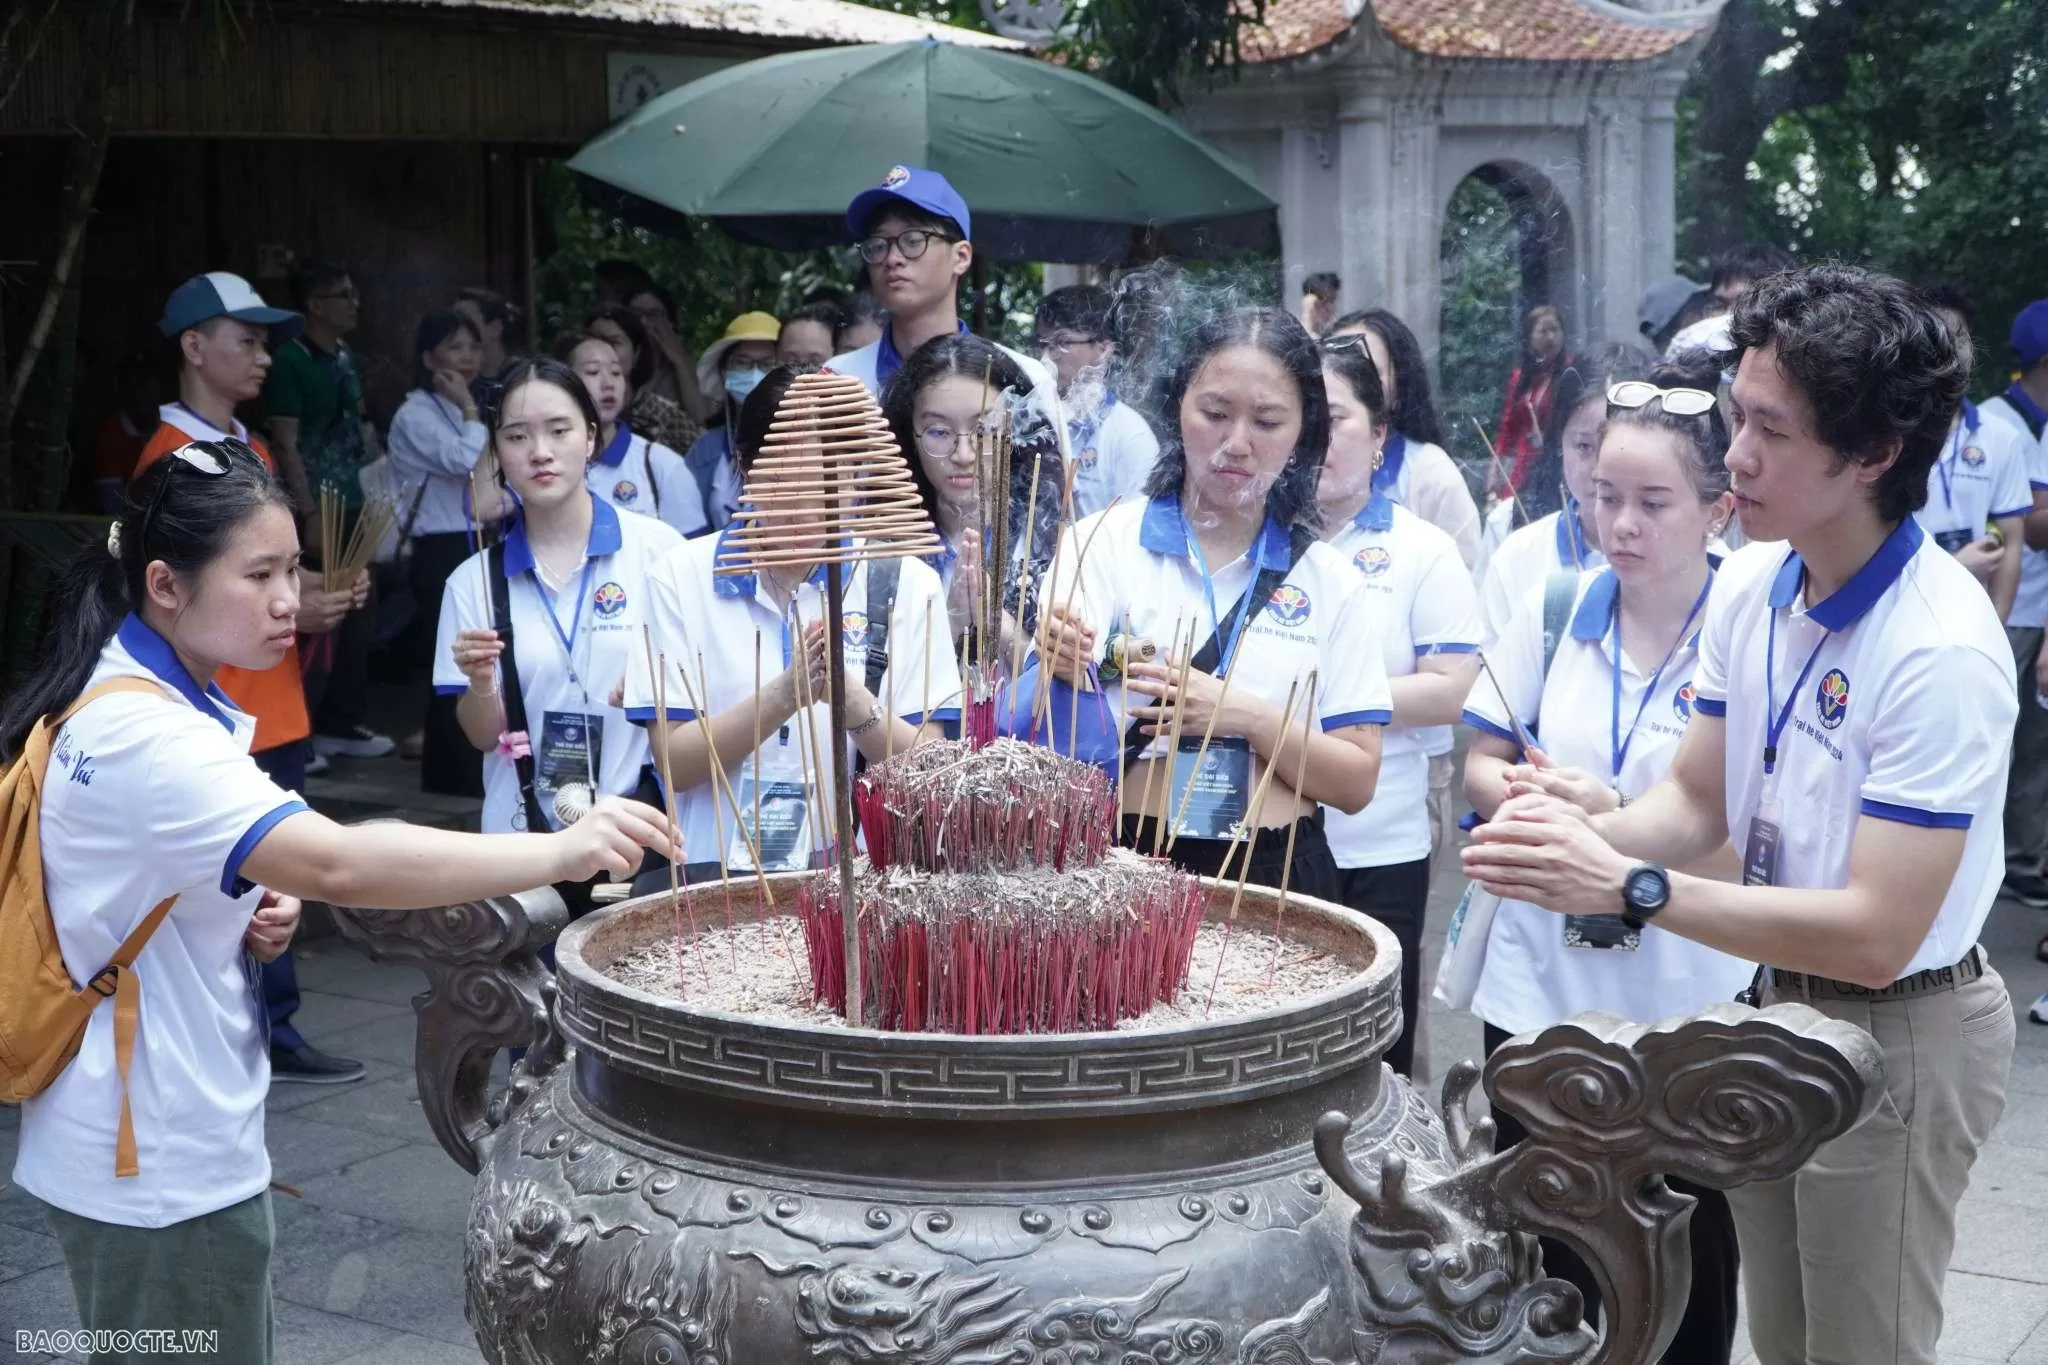 Trại hè Việt Nam 2024: Gần 120 kiều bào trẻ mong chờ những trải nghiệm đẹp khi trở về nguồn cội